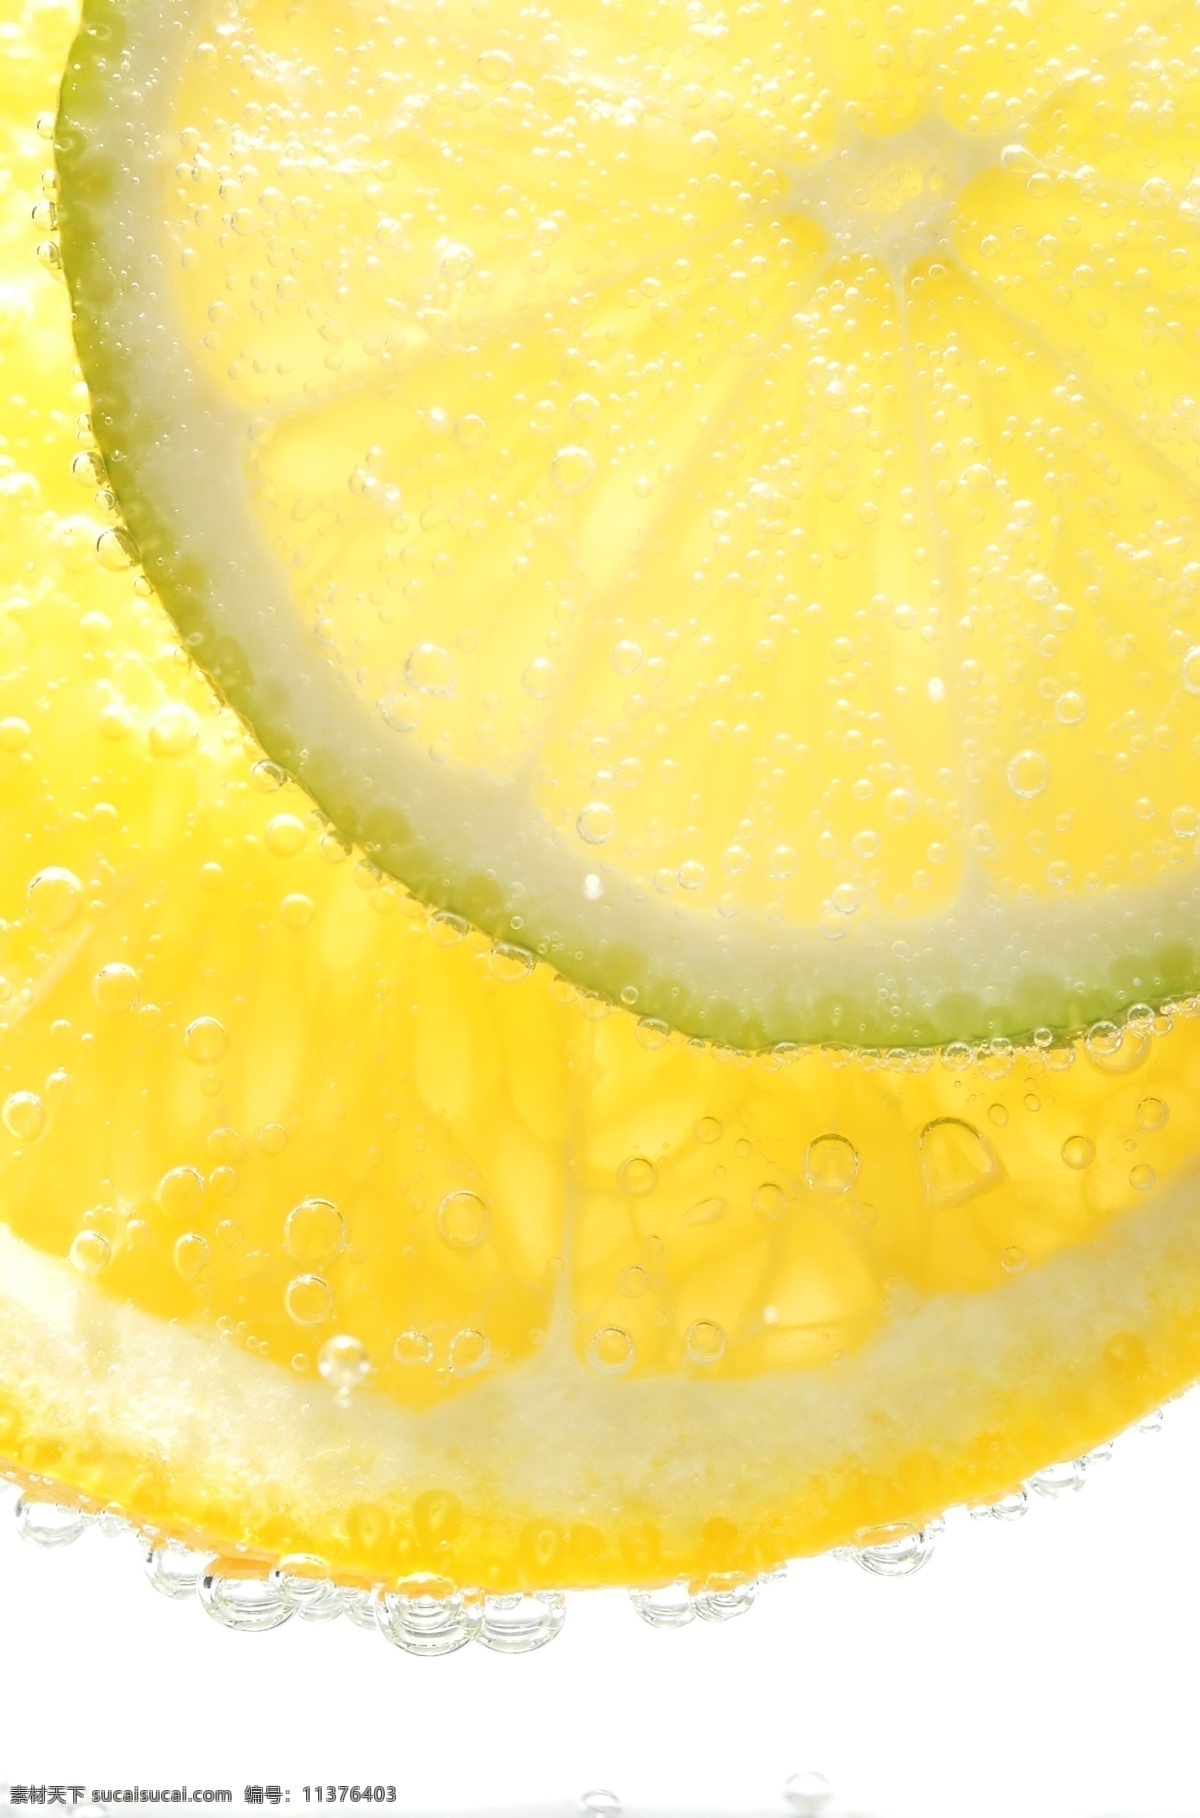 水果 新鲜水果 柠檬 橙子 柠檬片 水珠 水滴 背景图片 水果背景 水果蔬菜 餐饮美食 黄色